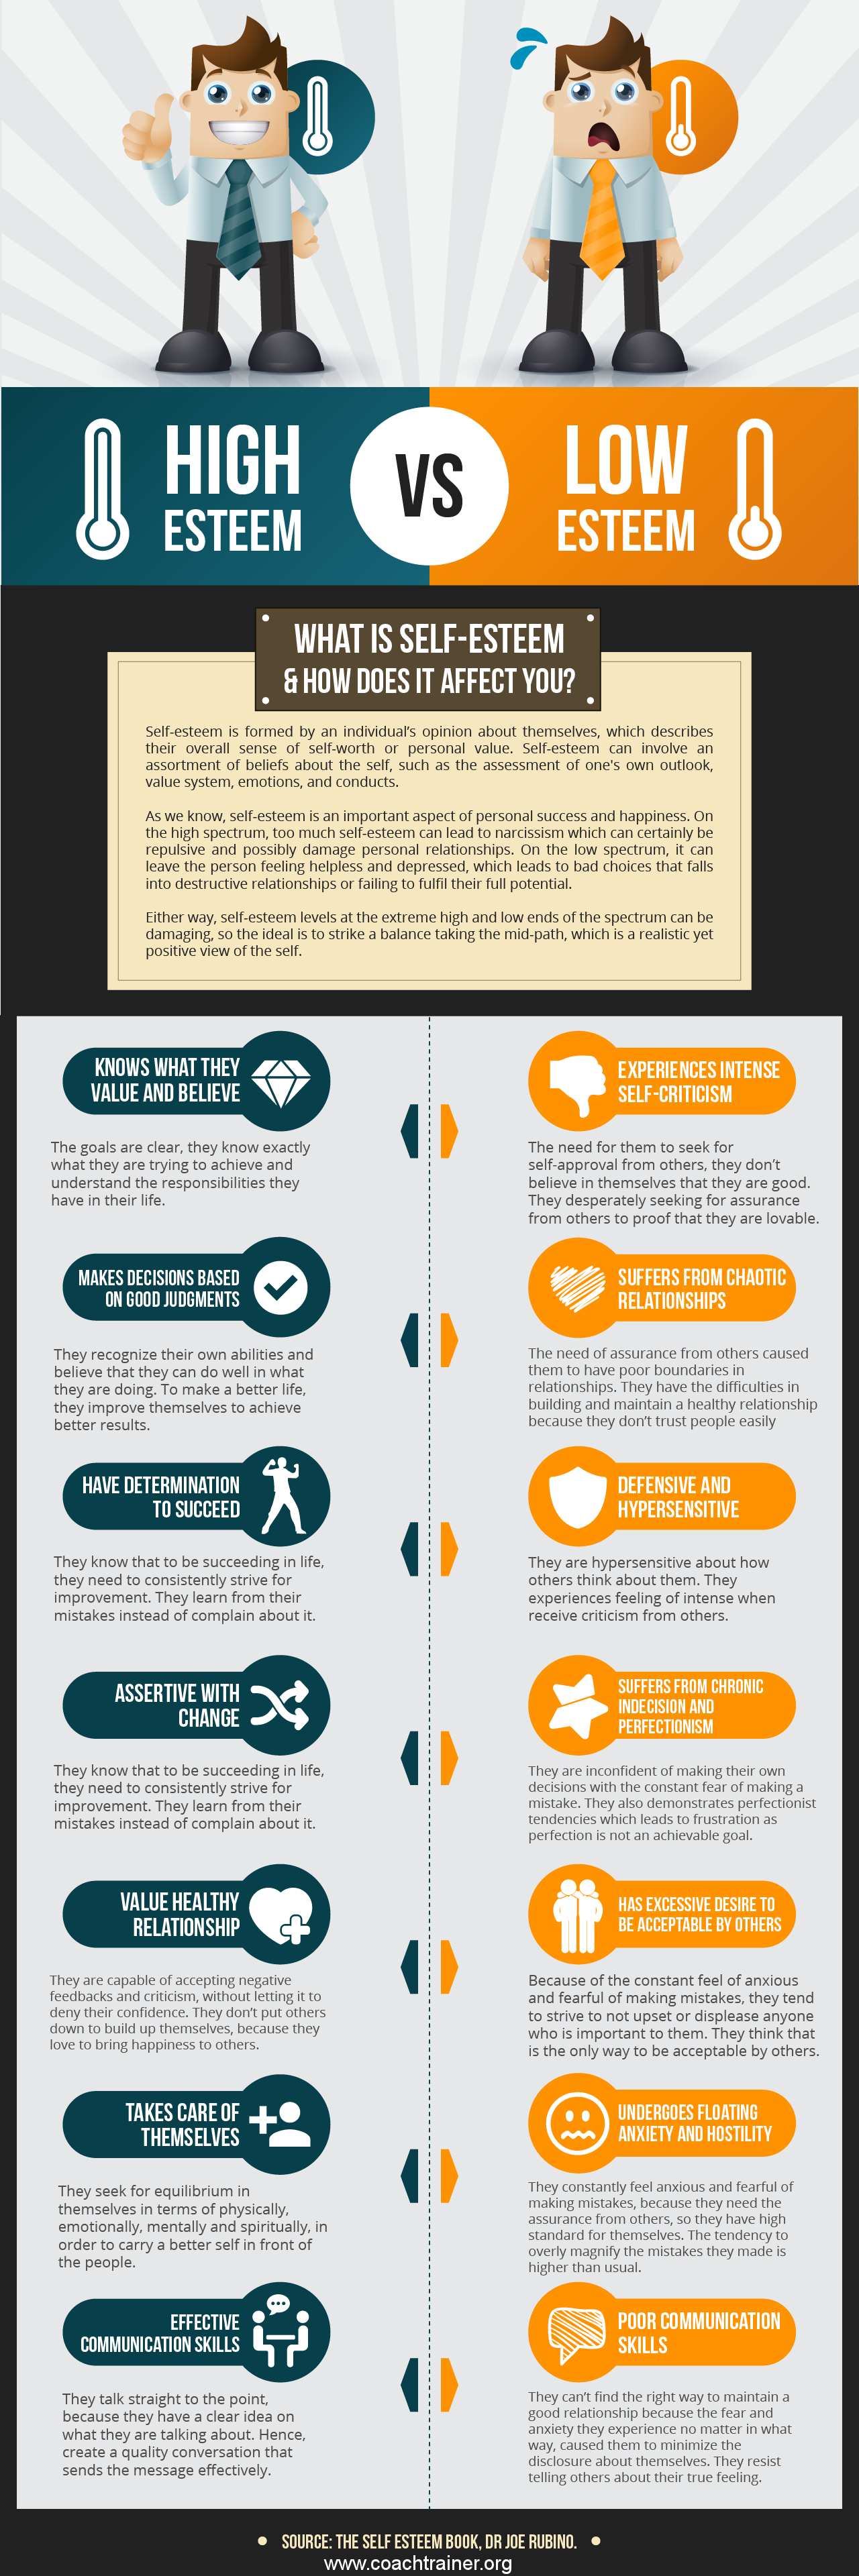 Self-esteem infographic on Behance